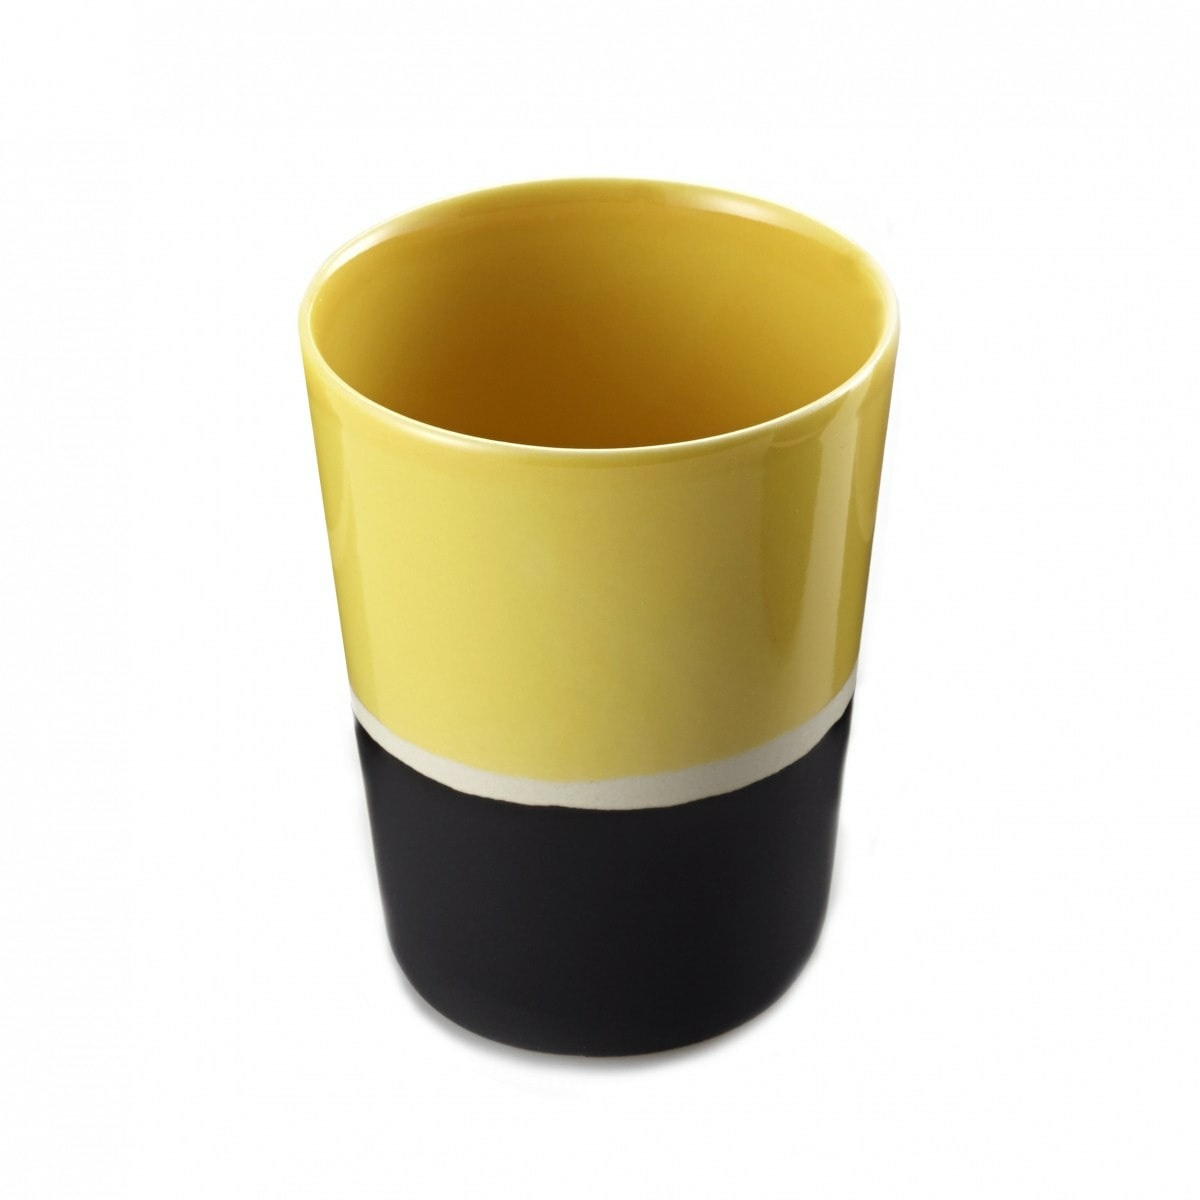 Ceramic Glass Sicilia, Black Radish - H10 cm - Ceramic - image 8